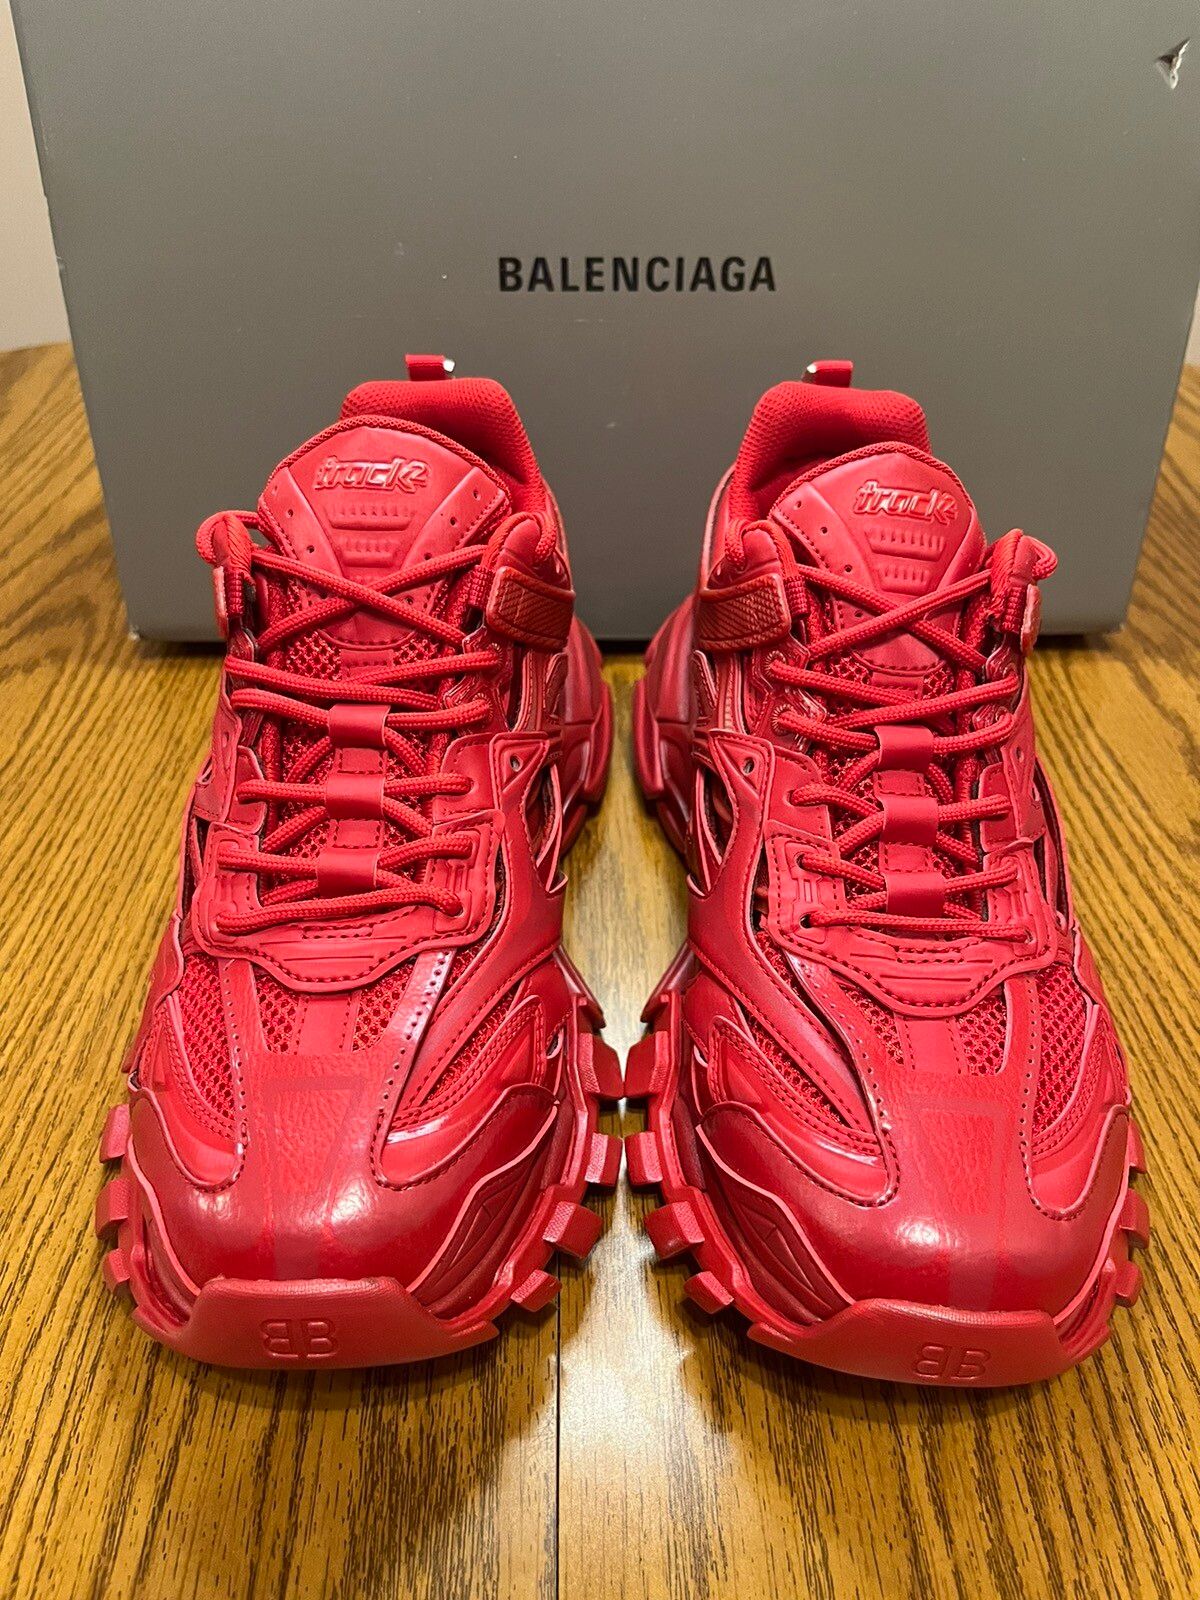 Balenciaga Balenciaga Track 2 Sneaker Size US 10 / EU 43 - 2 Preview